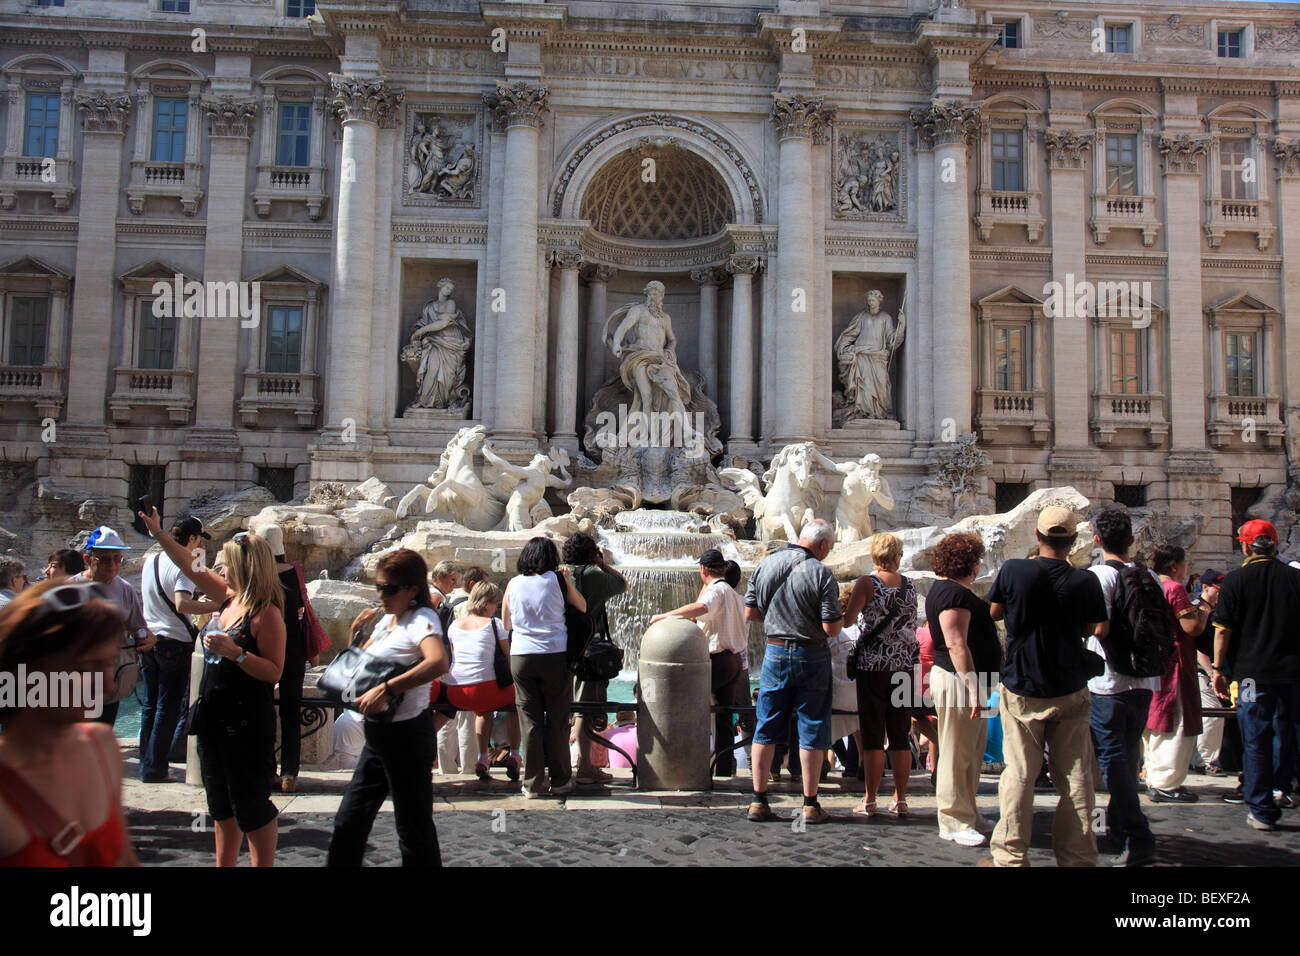 Las multitudes se reúnen alrededor de la fuente de Trevi (Fontana di Trevi) en Roma Foto de stock